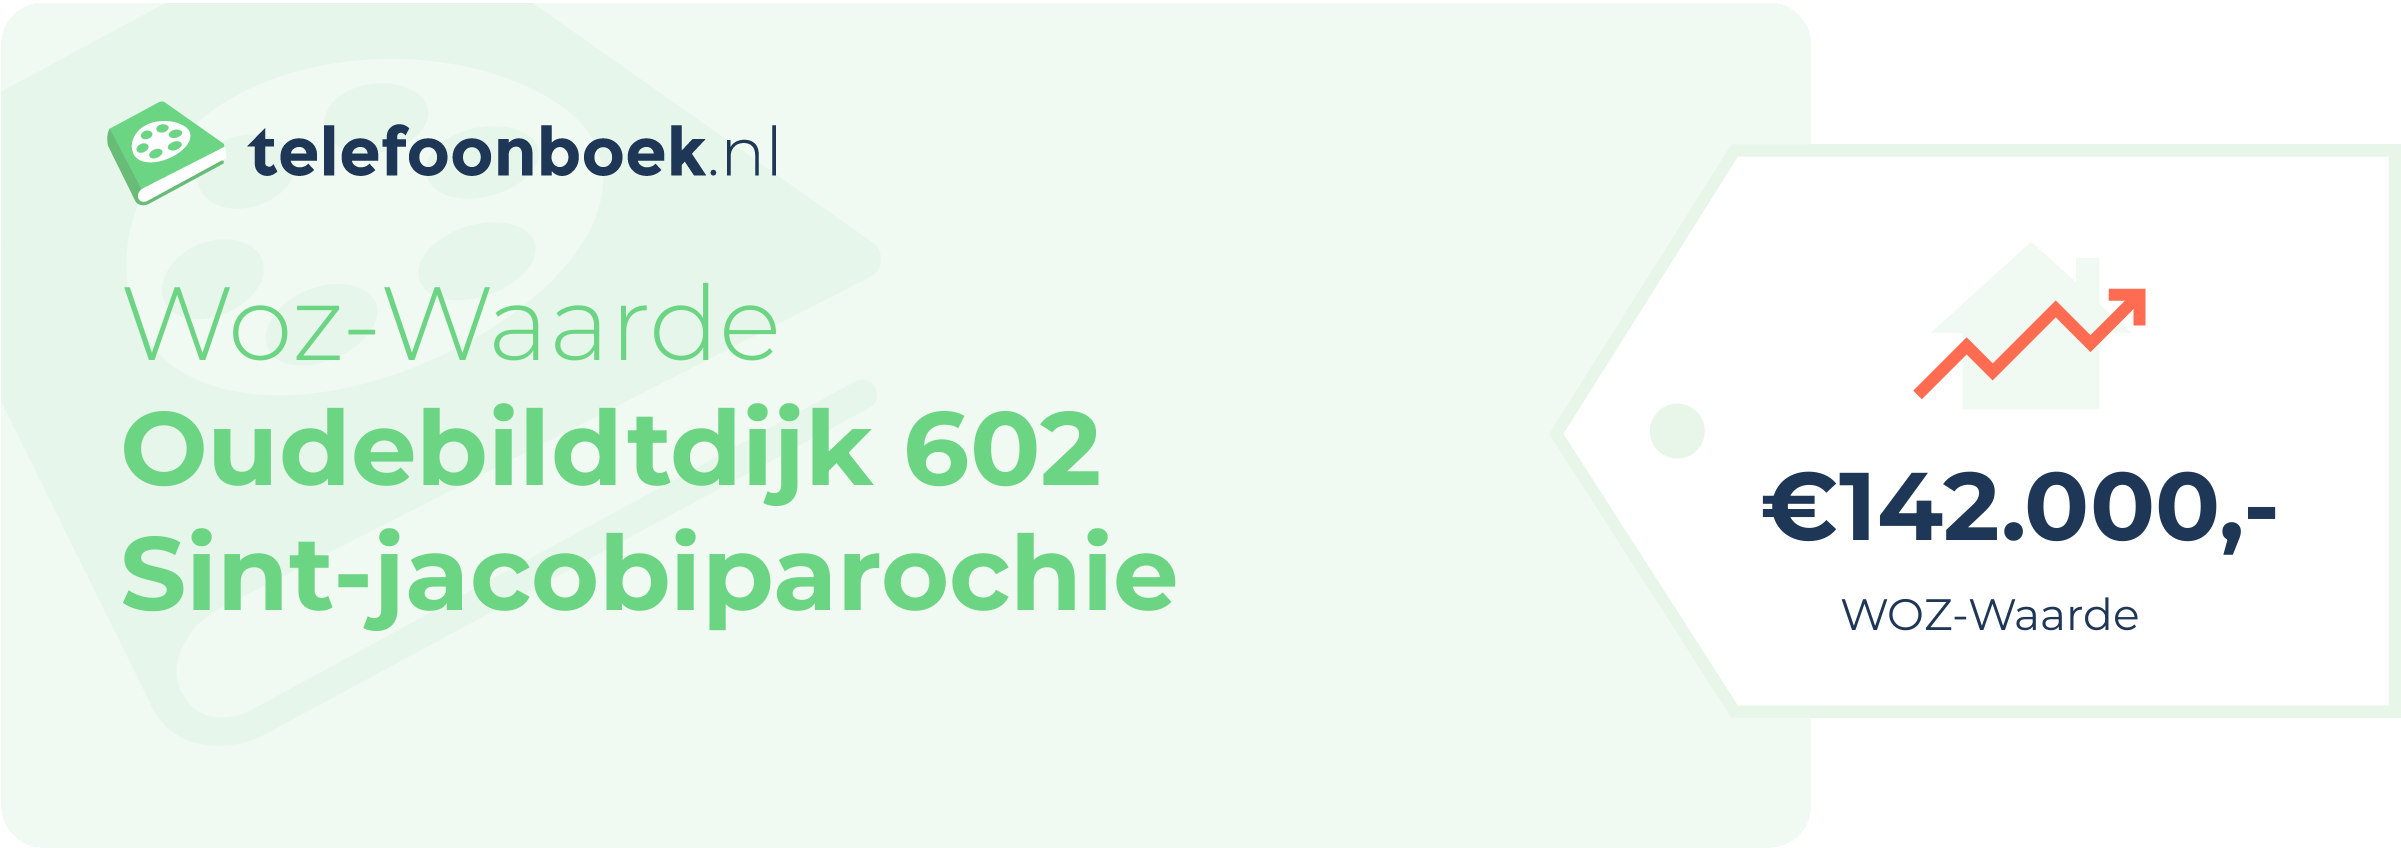 WOZ-waarde Oudebildtdijk 602 Sint-Jacobiparochie